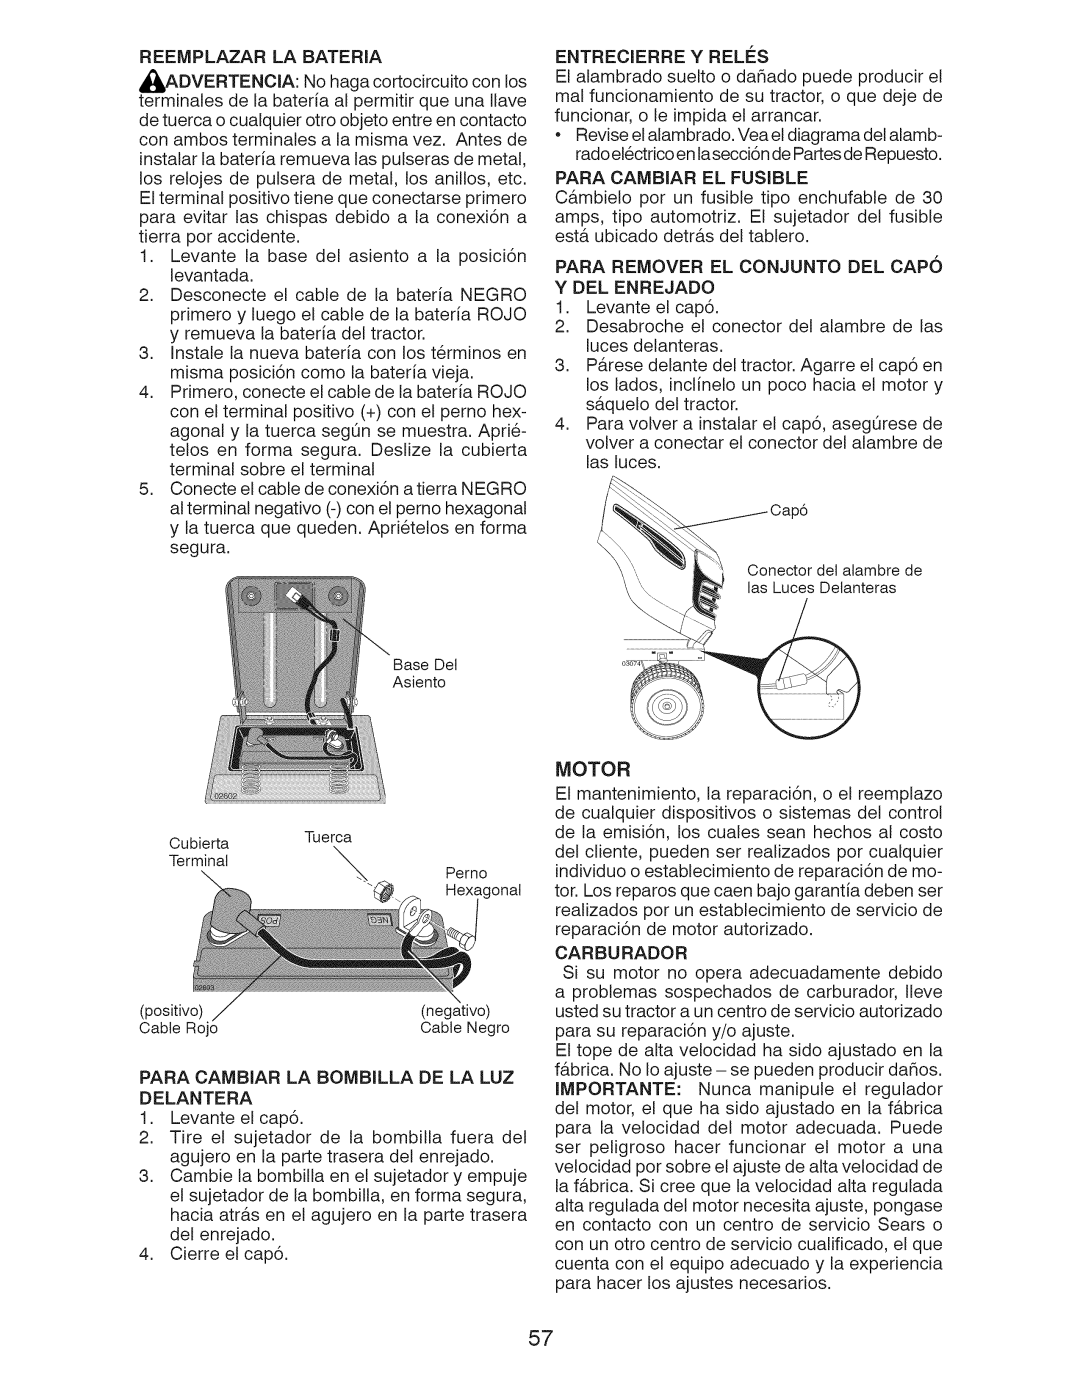 Craftsman 917.289240 owner manual Para Cambiar El Fusible, Para Remover El Conjunto Del Capo Y Del Enrejado, Carburador 